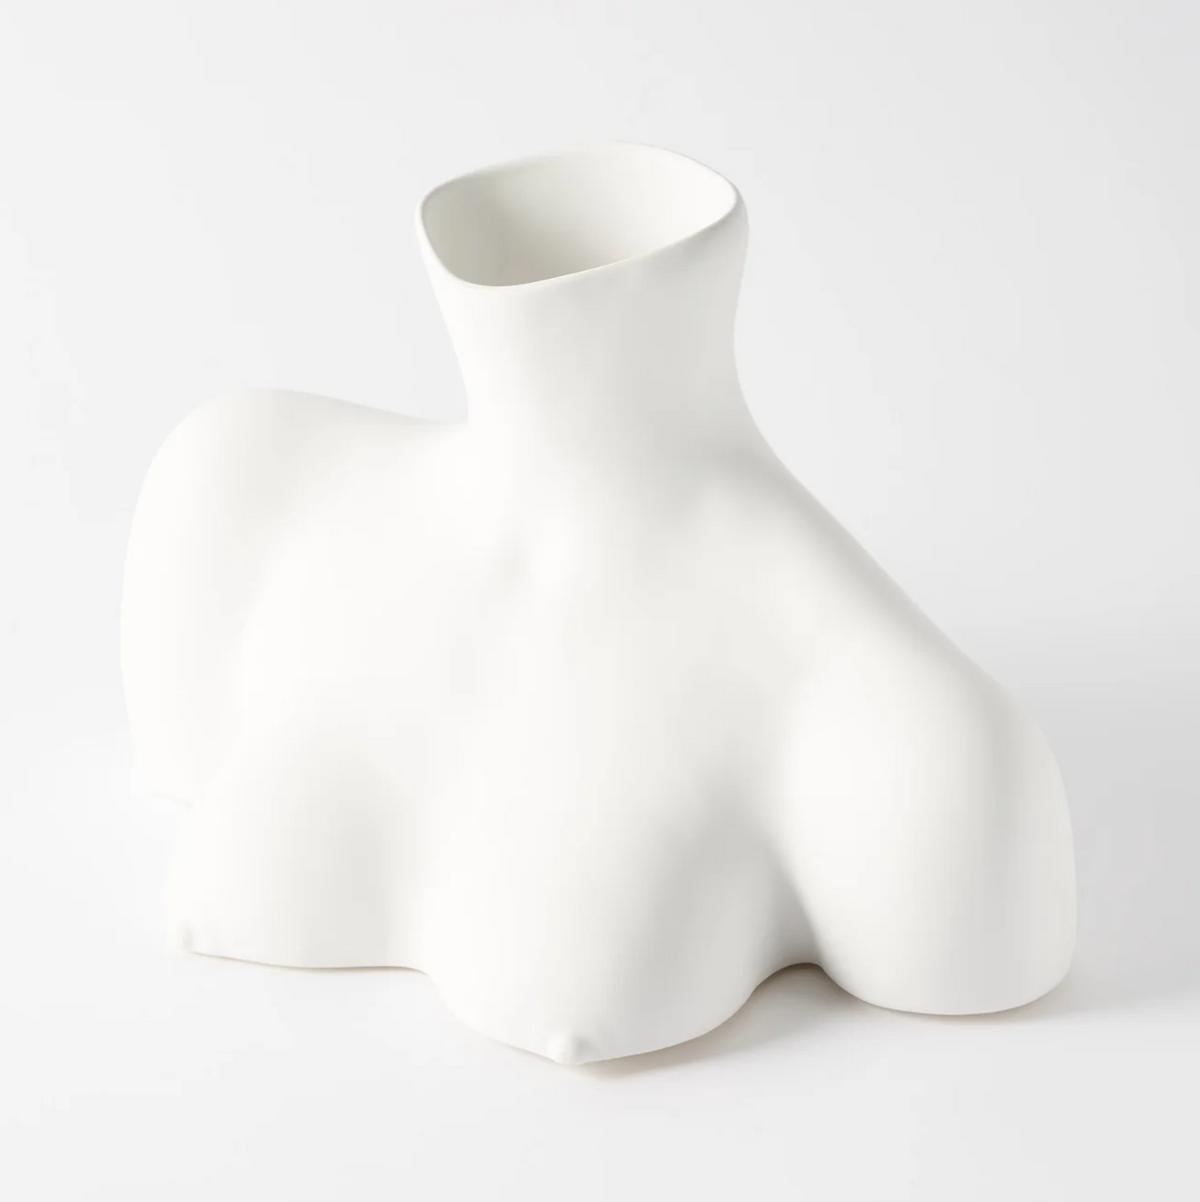 Breast Friend Vase - White by Annisa Kermiche